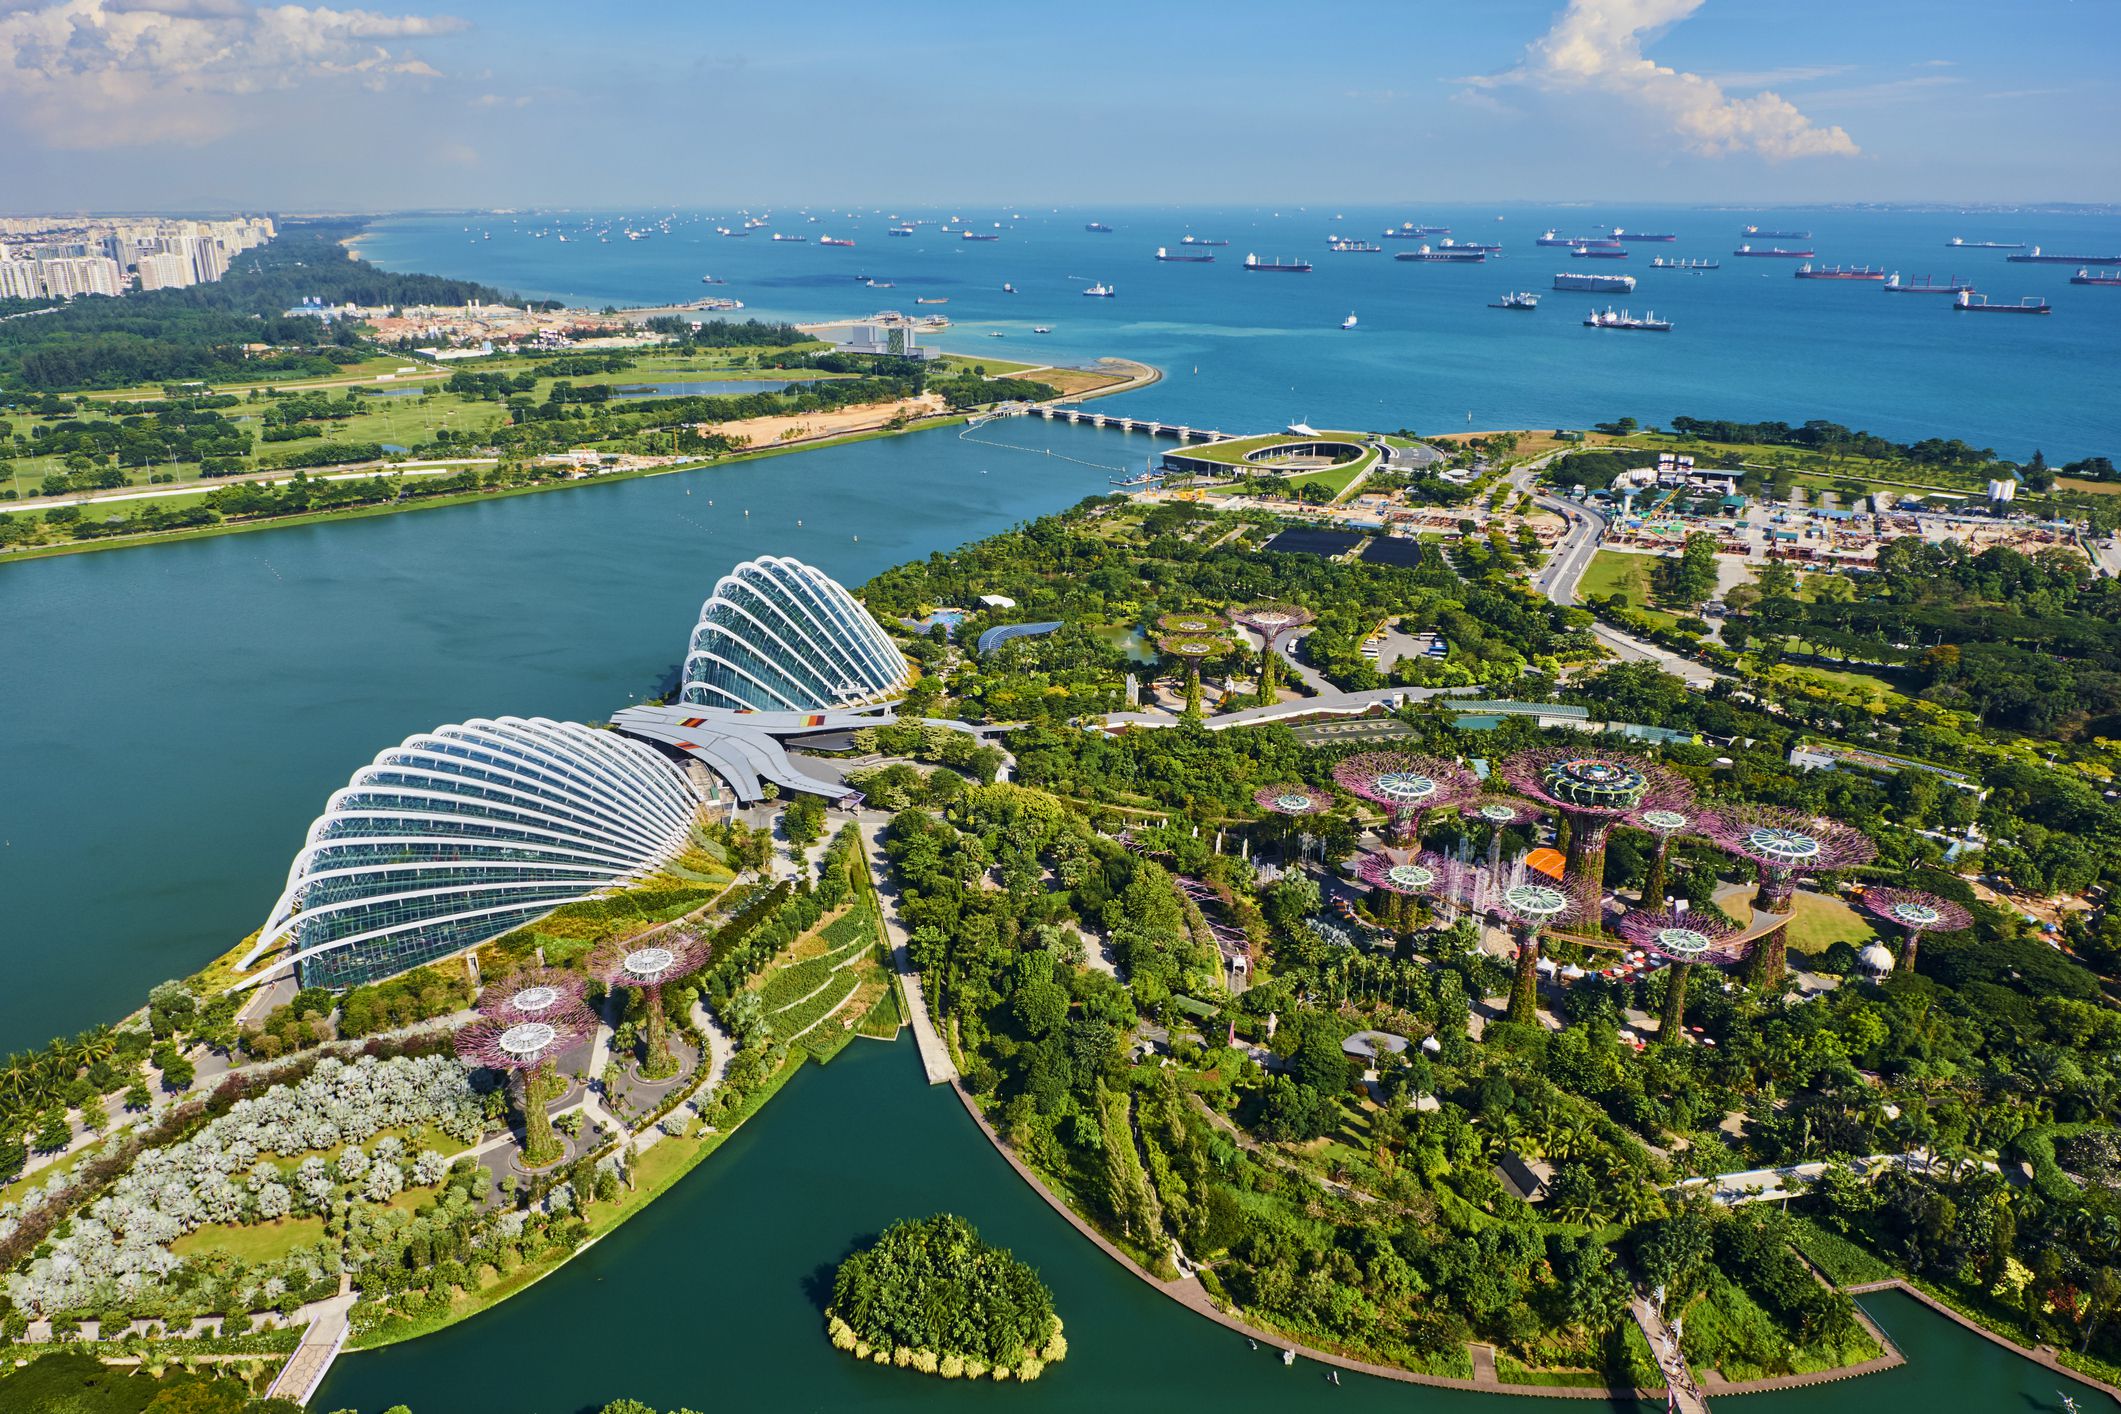 Explore Singapore in June